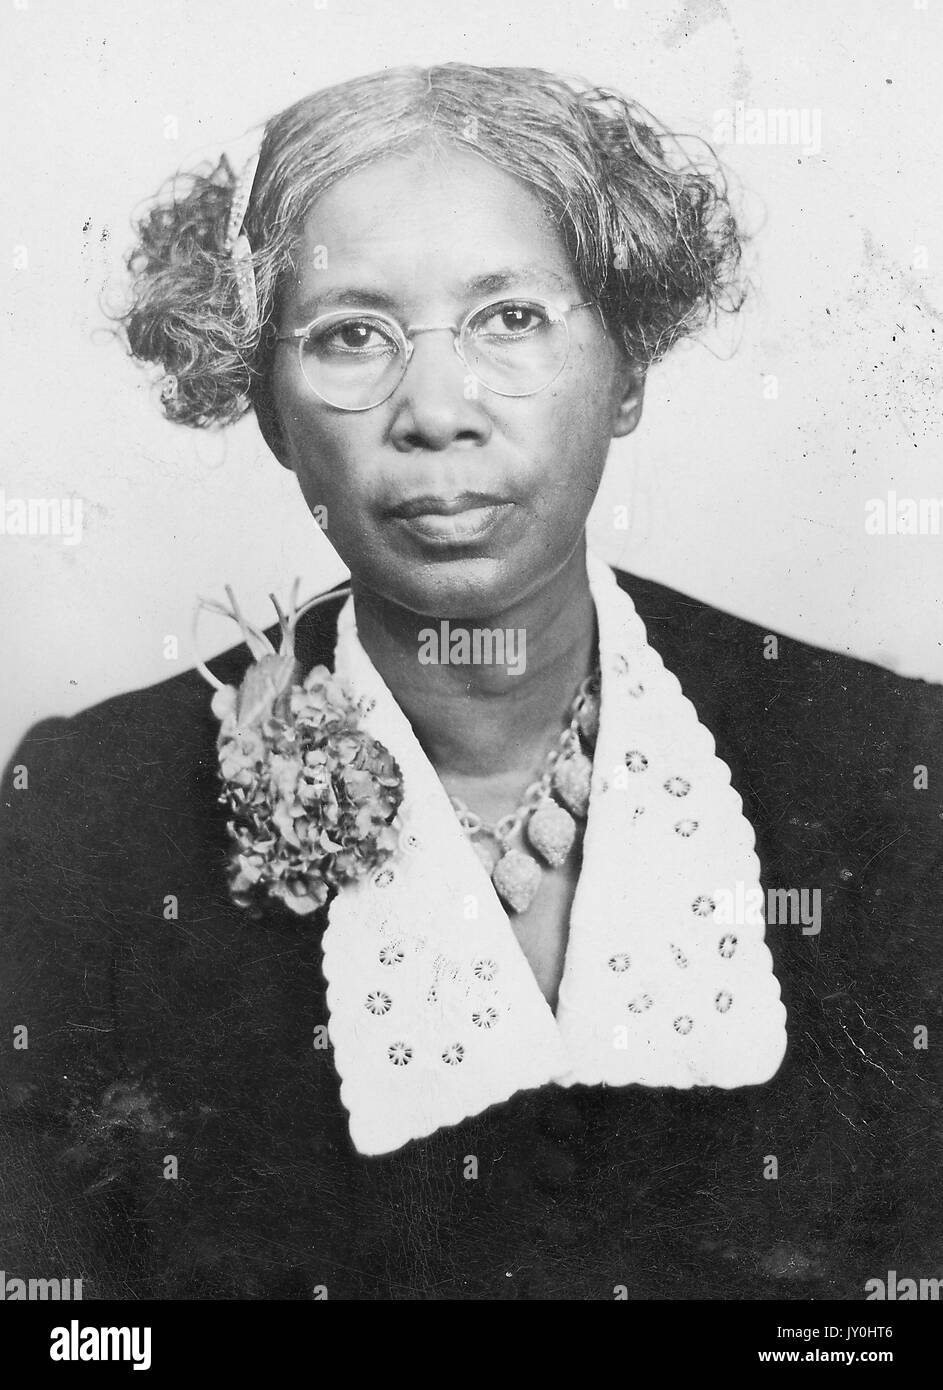 Tête de femme afro-américaine mature, portant un chemisier sombre avec collier clair, collier, broche de fleur, lunettes et barrettes de cheveux, expression neutre, 1925. Banque D'Images